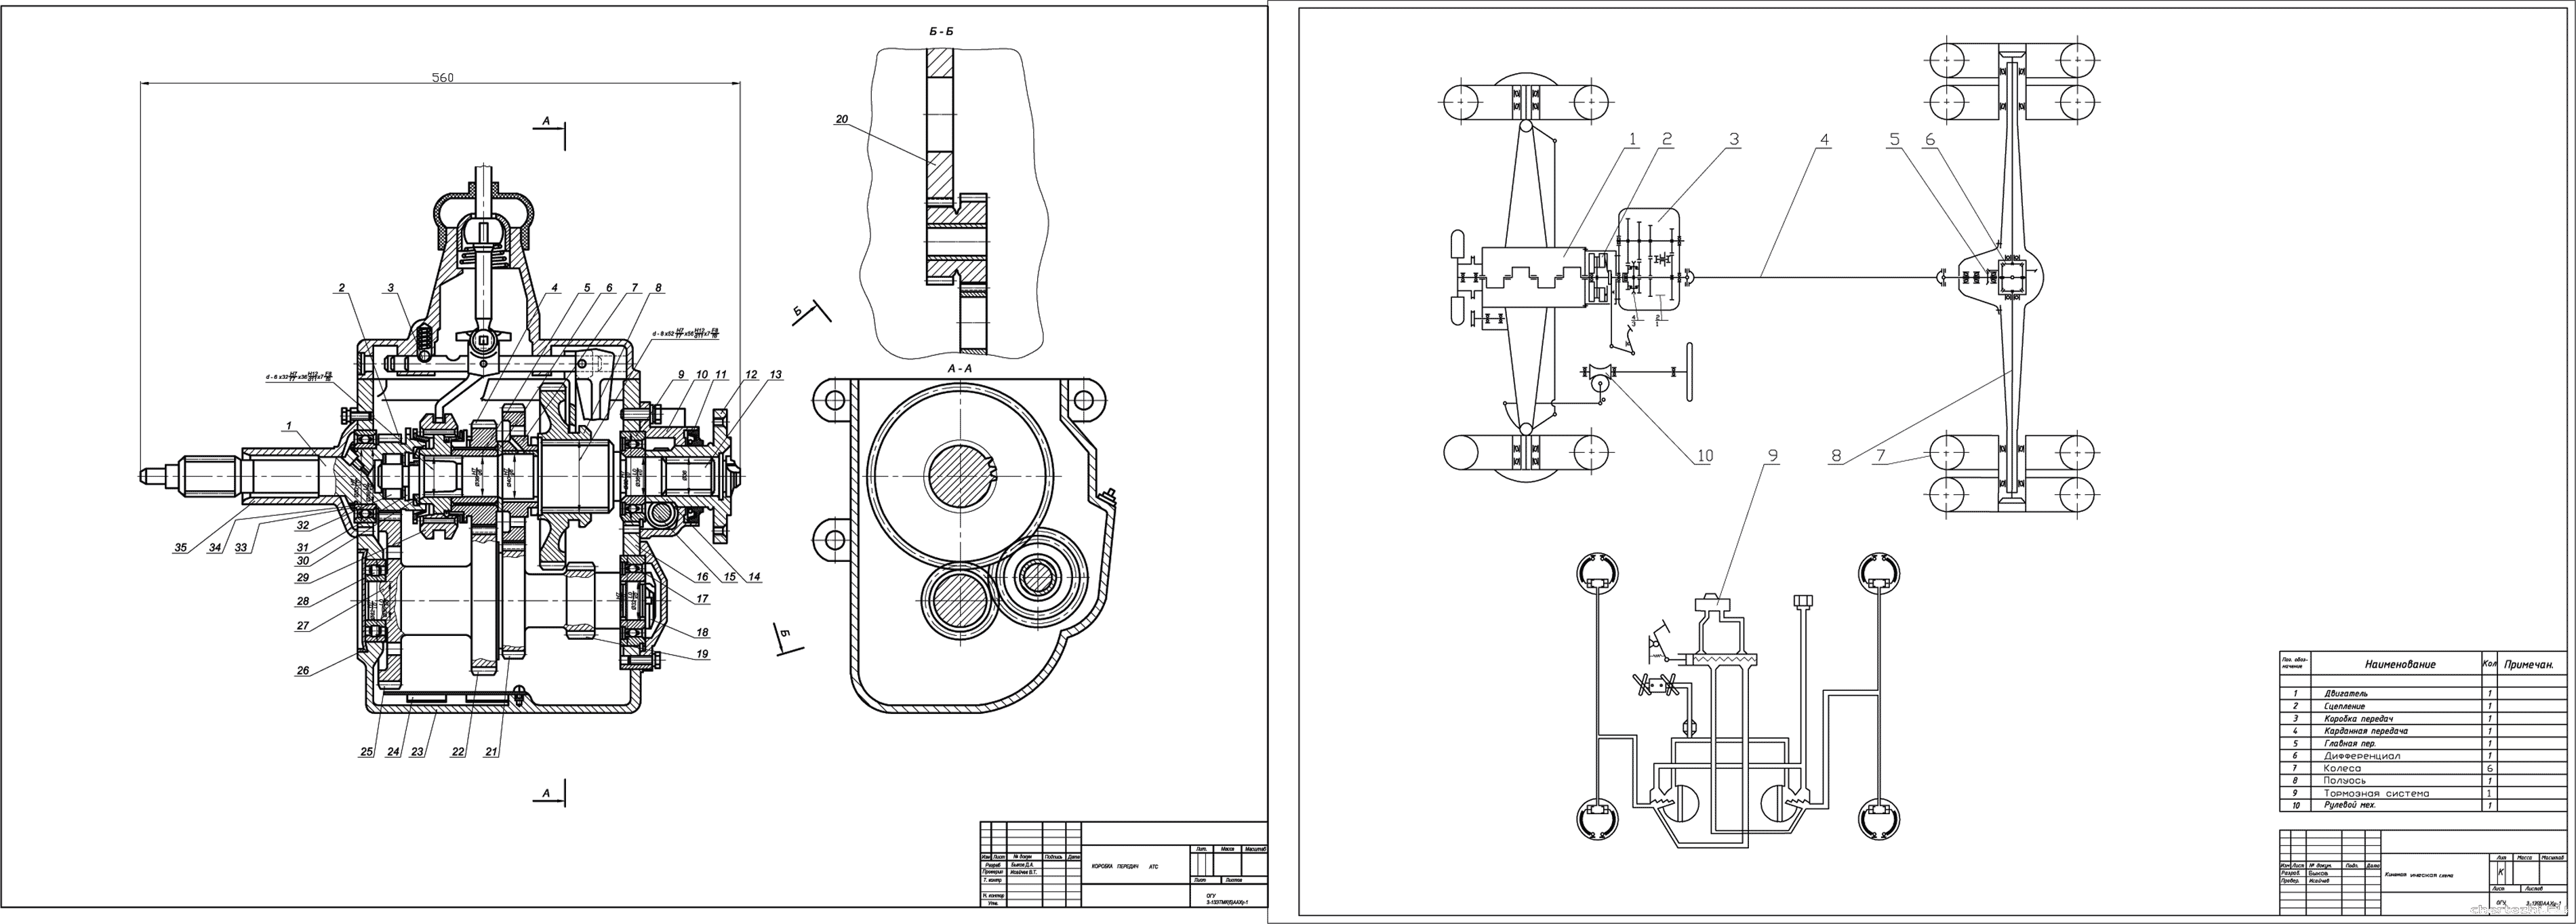 Курсовой проект - Проектирование коробки передач Икарус - 243